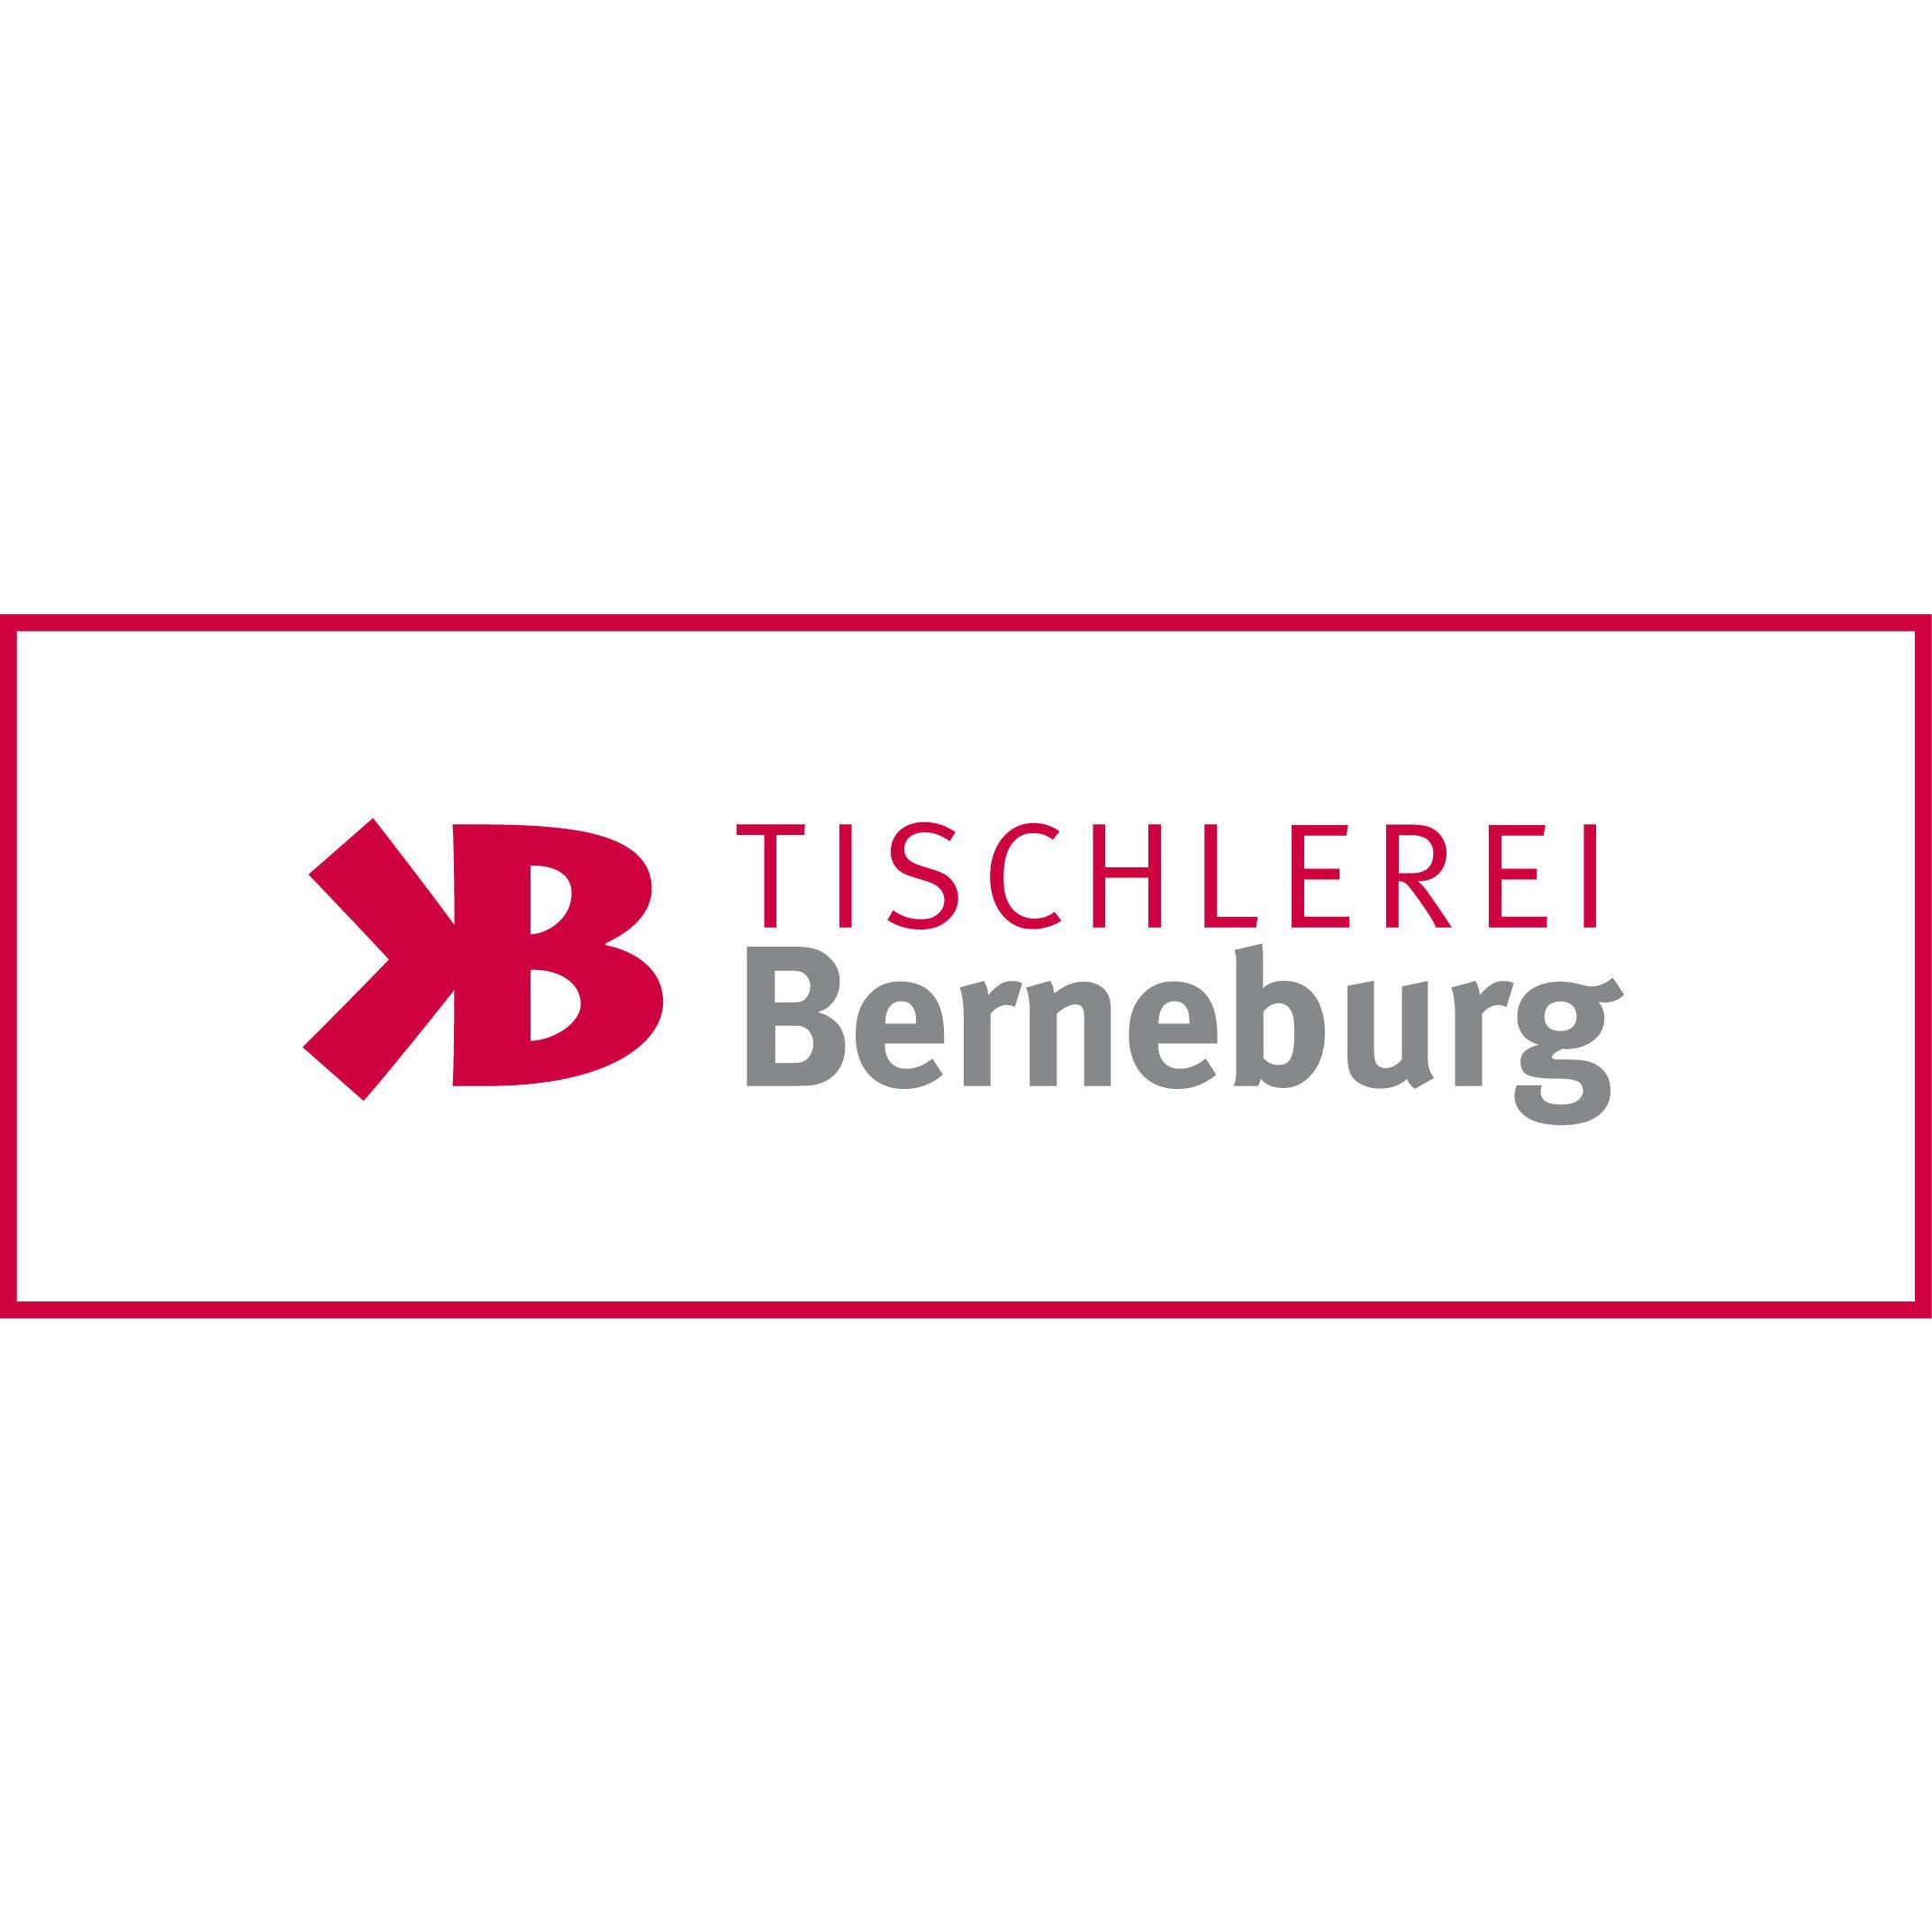 Bau- und Möbeltischlerei Berneburg GmbH & Co. KG Logo